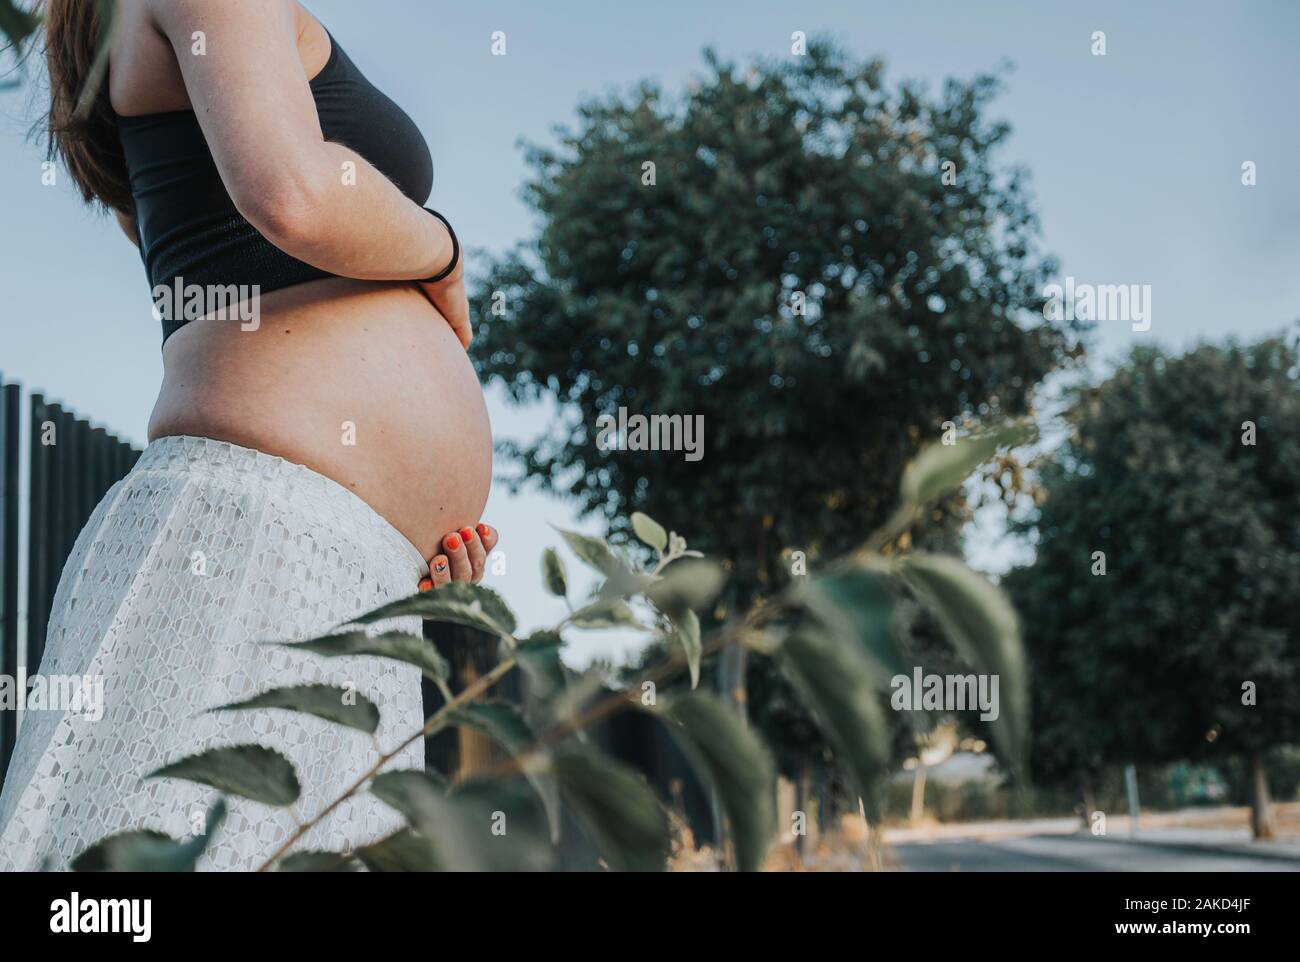 Nahaufnahme von Frau Hände halten schwanger Bauch, Nahaufnahme, glückliche Familie Baby erwartet, stehend auf grünem Gras, Körperteil, junge Familie und das neue Leben conc Stockfoto